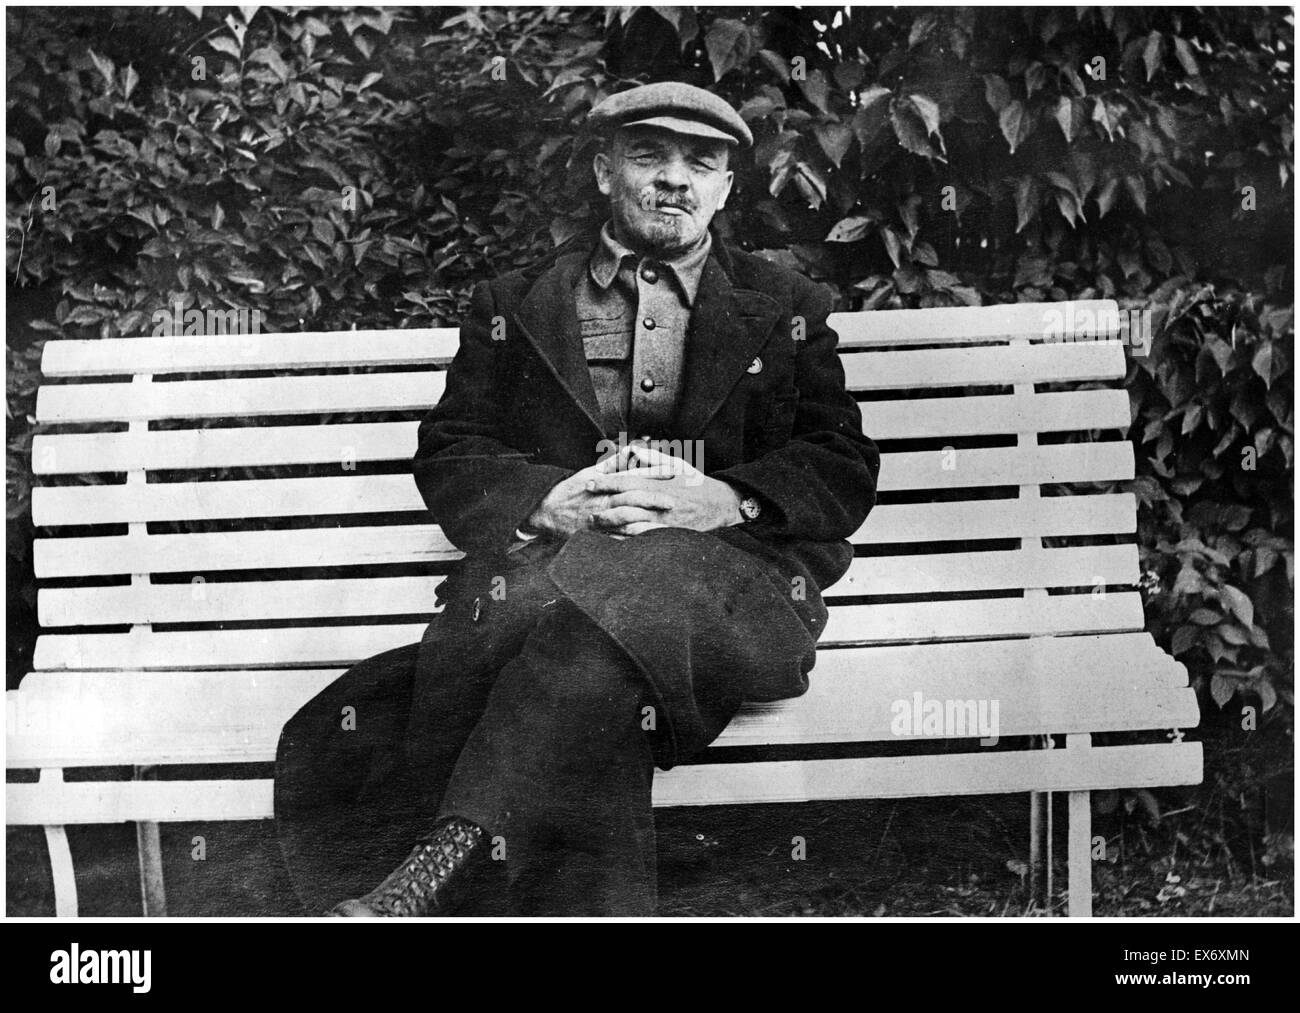 Vladimir Lenin seduto su una panchina. Lenin è stato il russo leader comunista che ha preso il potere dopo il 1917 Rivoluzione di Ottobre Foto Stock